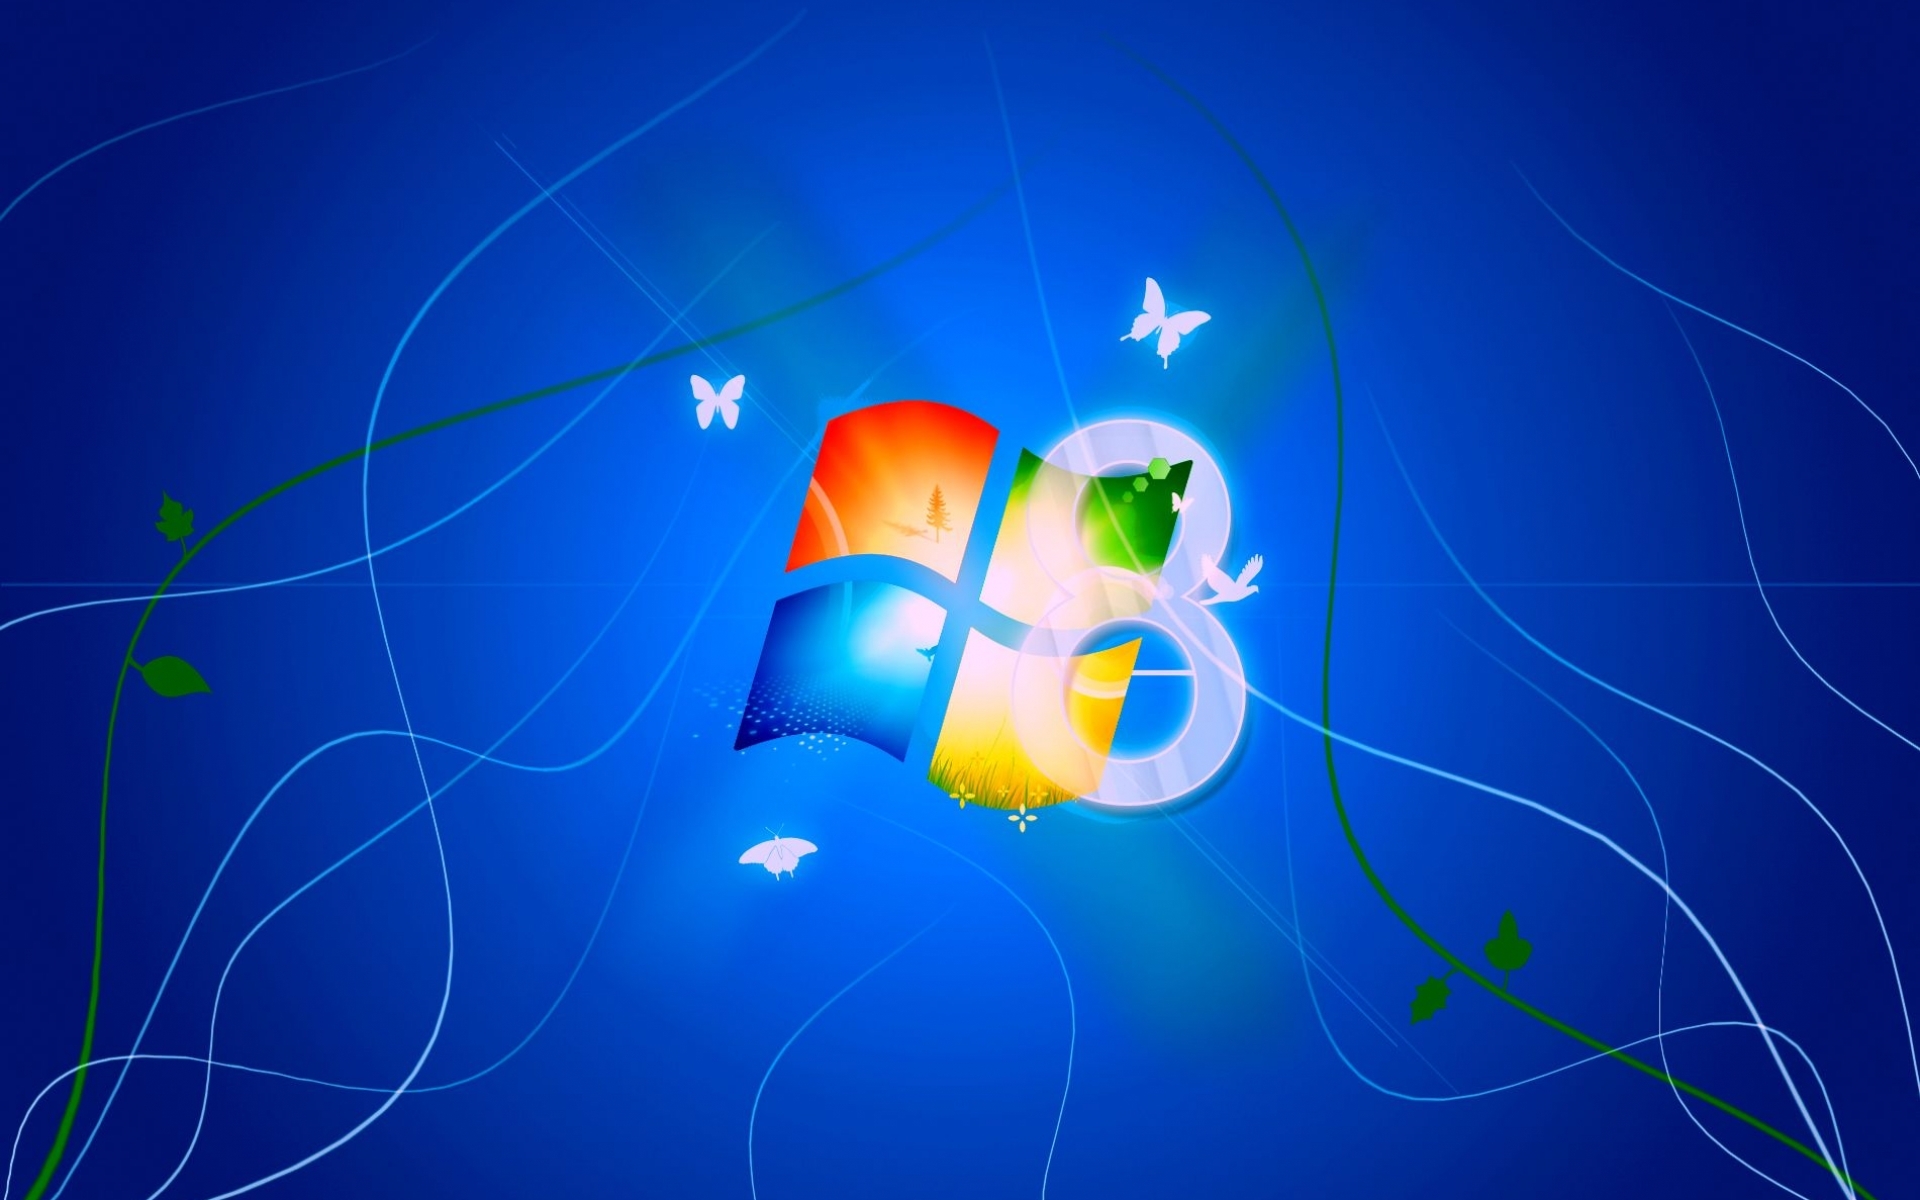 desktop Images windows, brands, background, blue